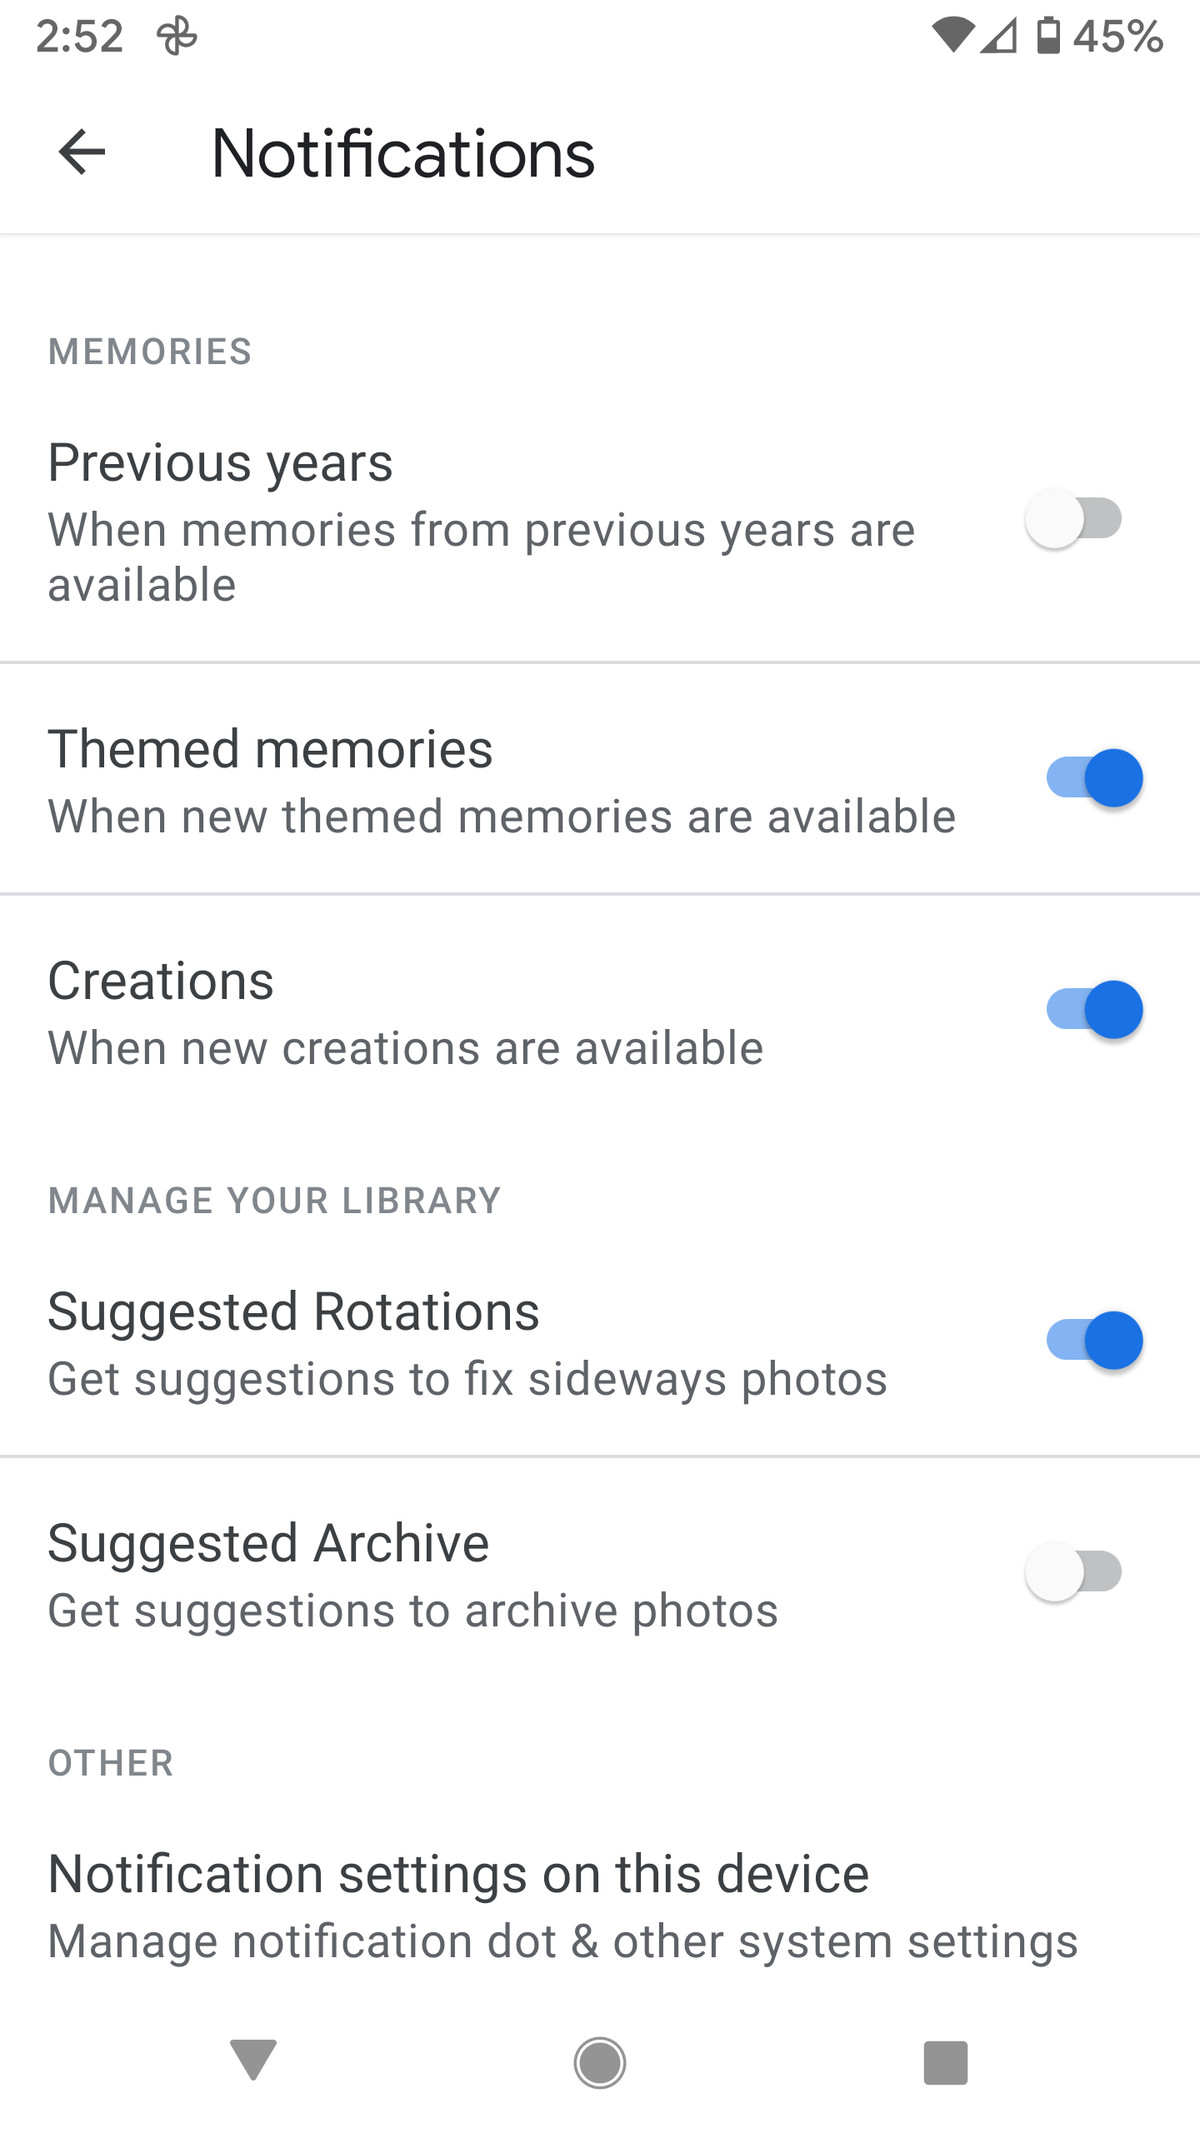 También puedes elegir cuándo quieres ver notificaciones sobre recuerdos.